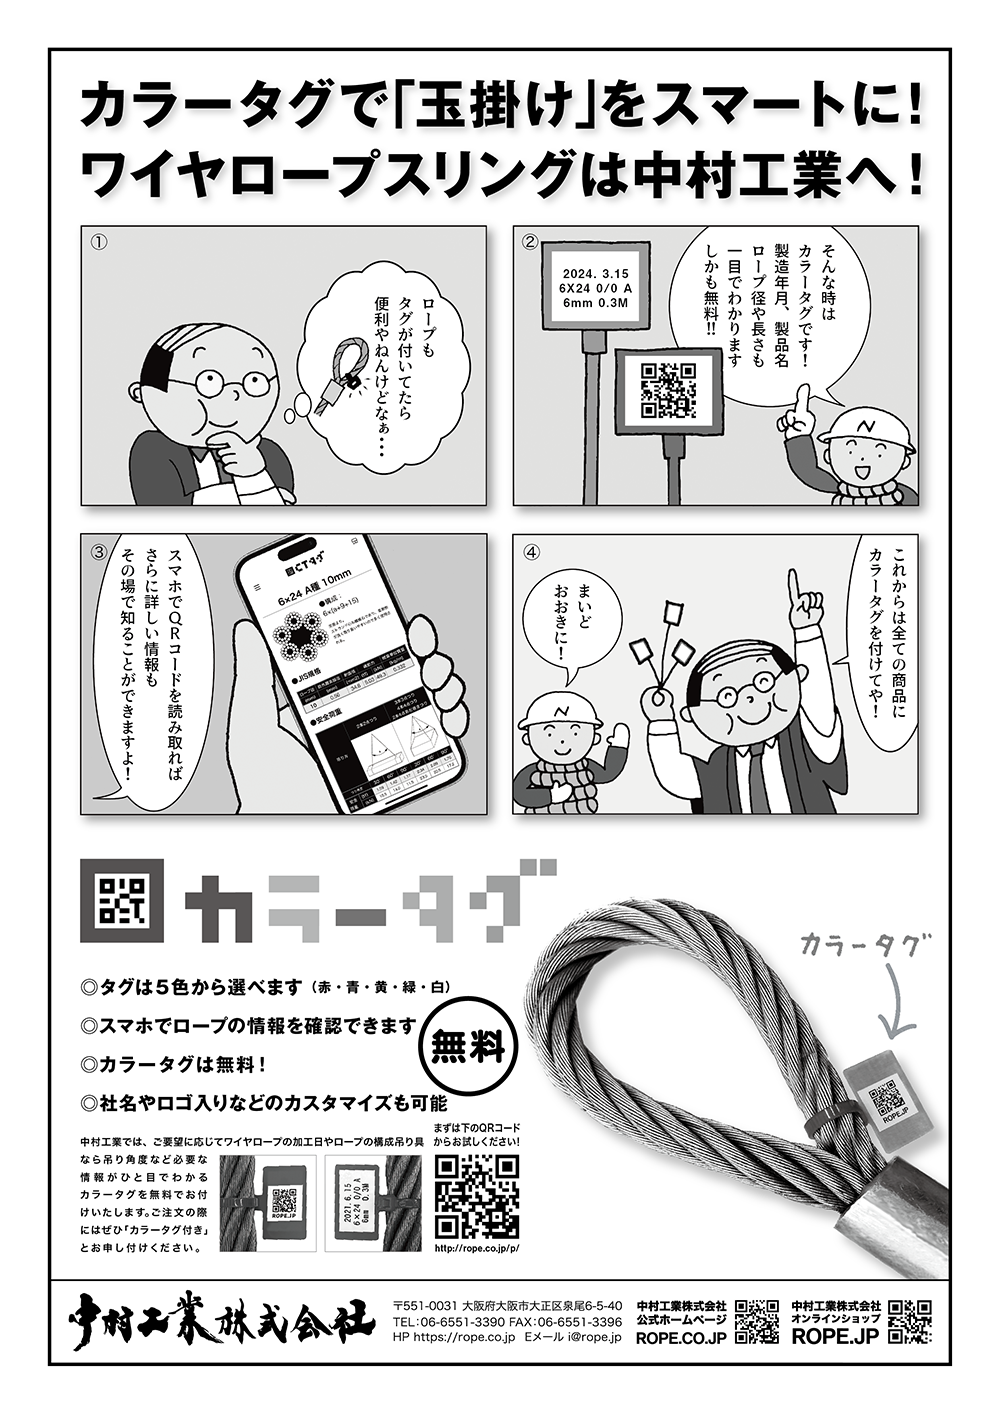 一般社団法人 日本クレーン協会 1月号 月刊誌「クレーン」2月号